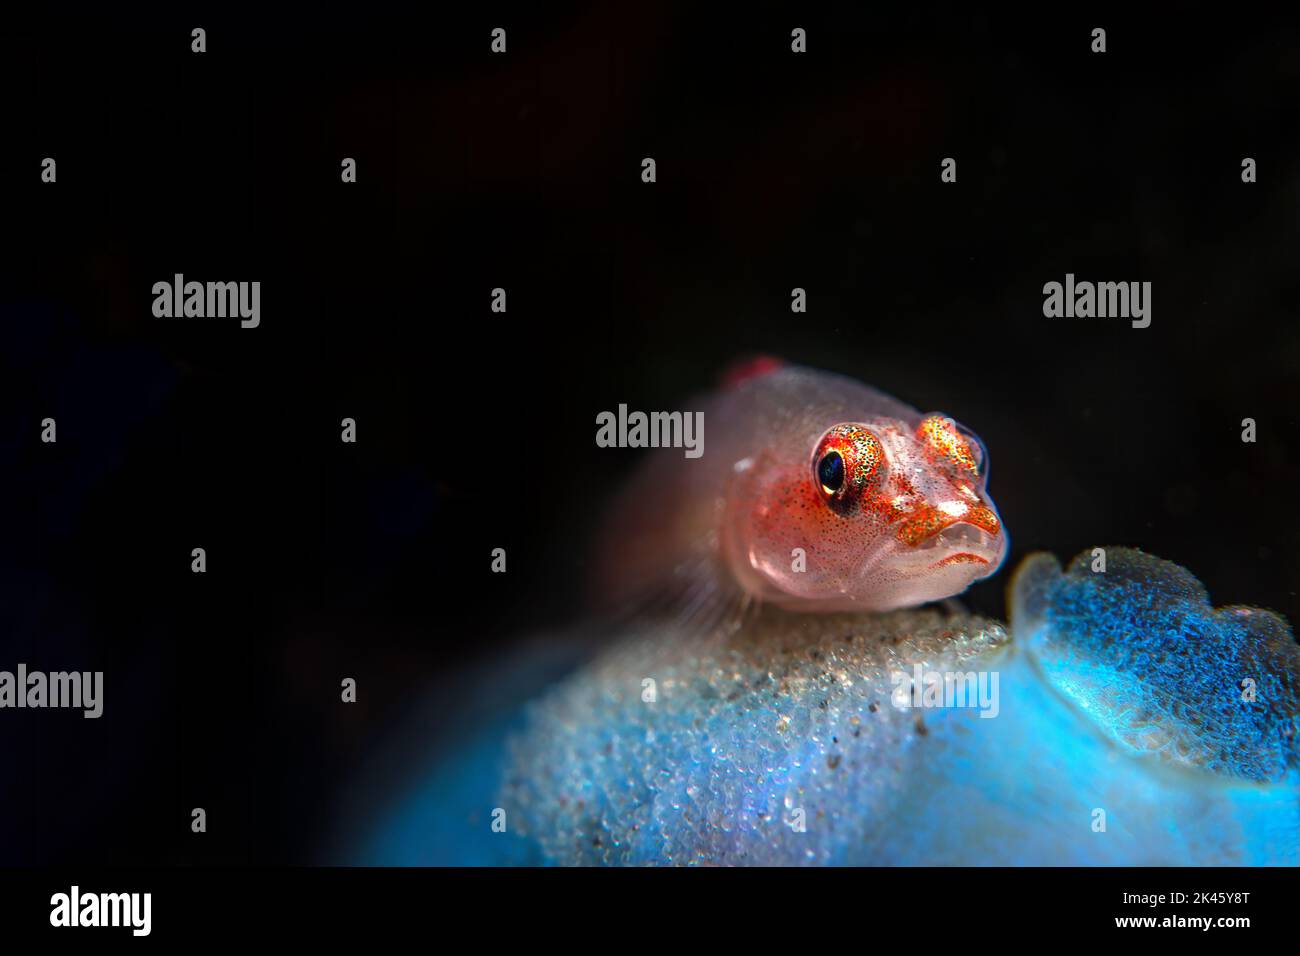 Un bel goby fantasma guarisce la sua covata di uova dispensate su una bella spugna blu mentre gli embrioni si sviluppano in ultima analisi in pesci nuoto. Foto Stock